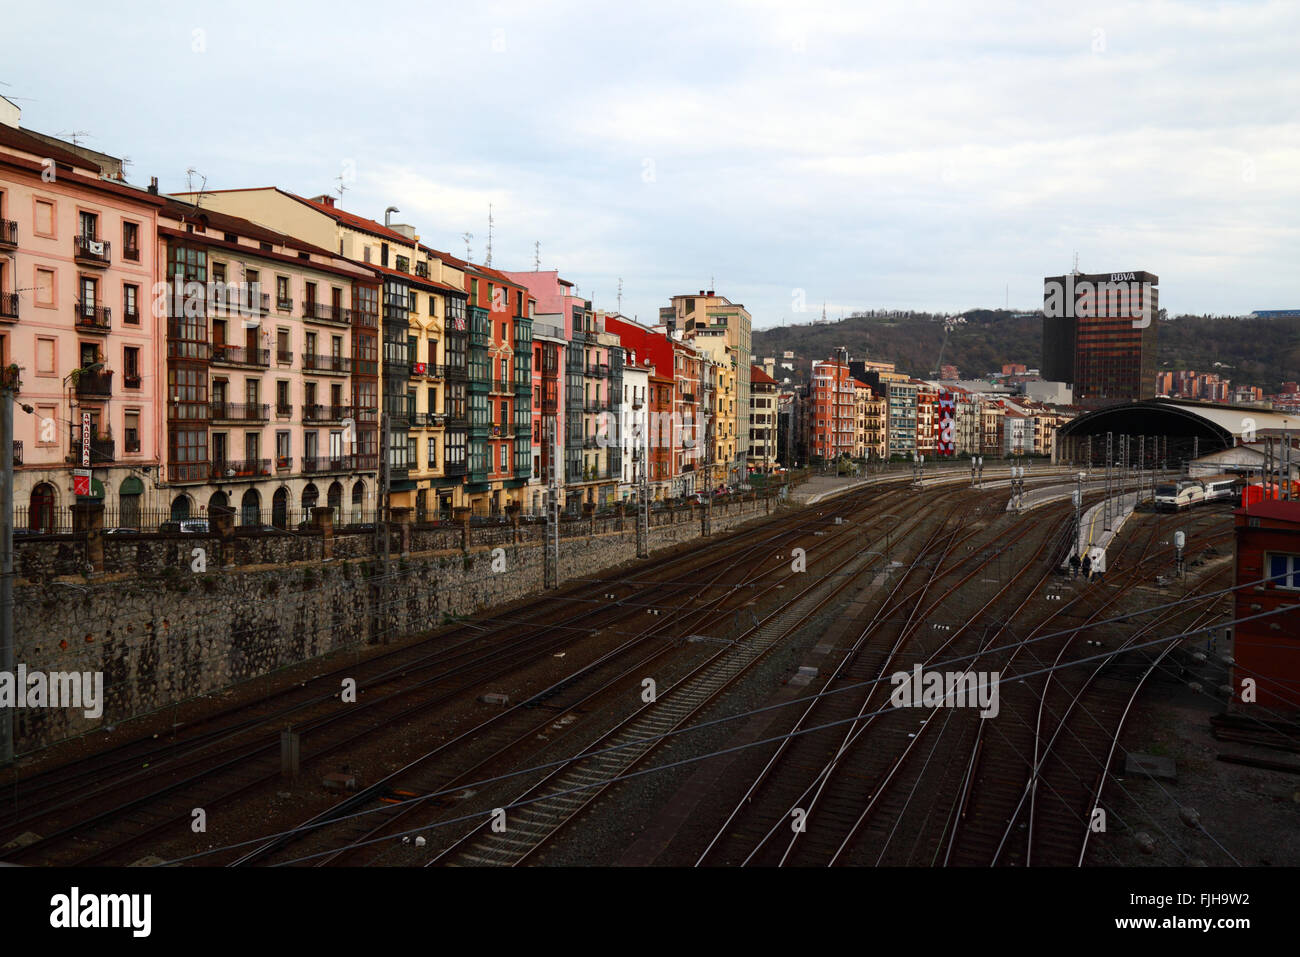 Renfe train électrique près de la gare Abando Indalecio Prieto, Bilbao, Pays Basque, Espagne Banque D'Images